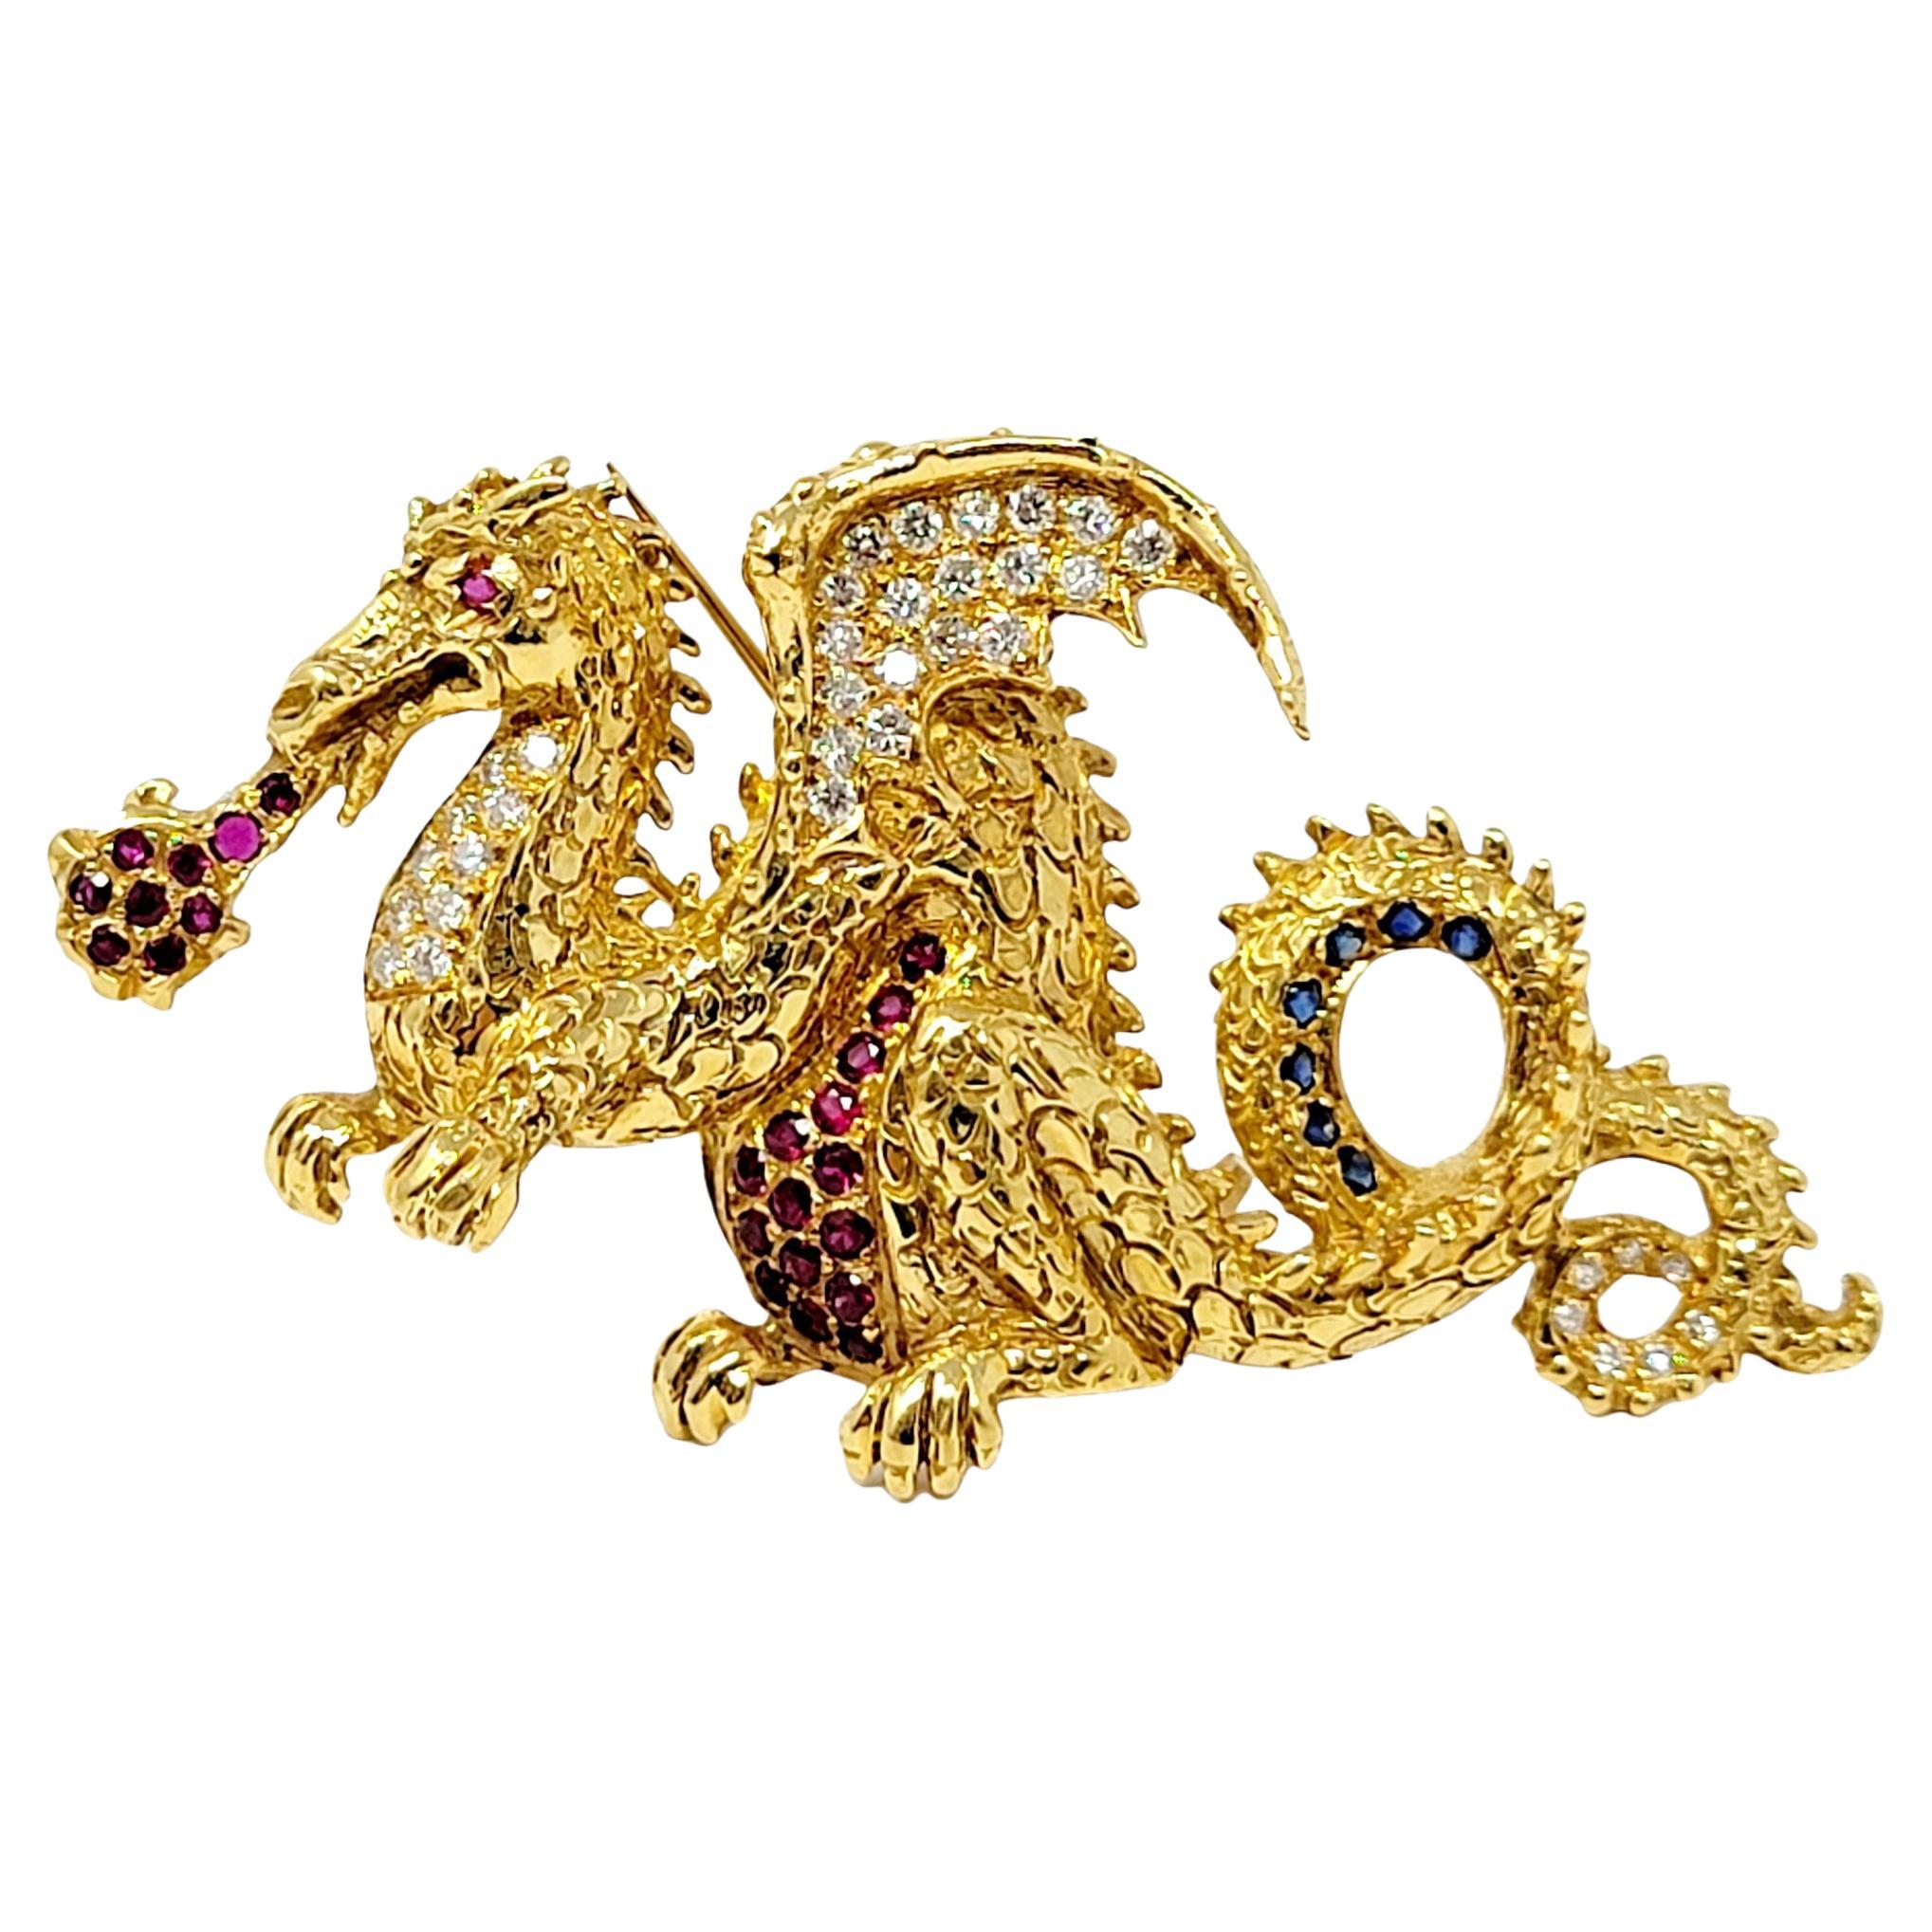 Dragon Brosche mit Diamanten, Rubinen und Saphiren aus 18 Karat Gelbgold .93 Karat insgesamt 